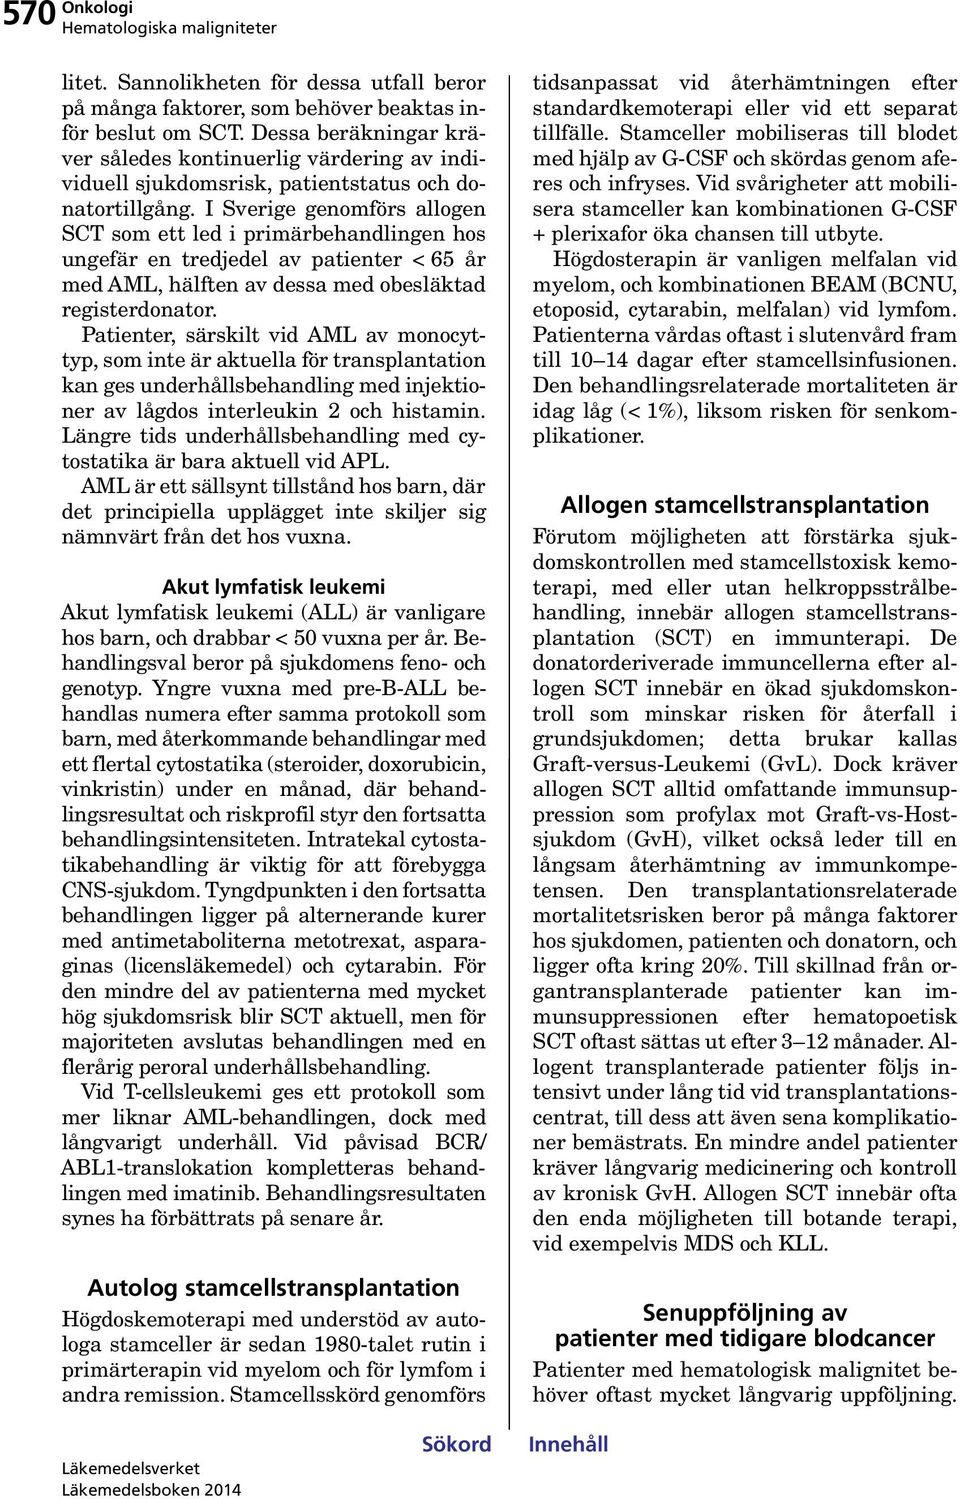 I Sverige genomförs allogen SCT som ett led i primärbehandlingen hos ungefär en tredjedel av patienter < 65 år med AML, hälften av dessa med obesläktad registerdonator.